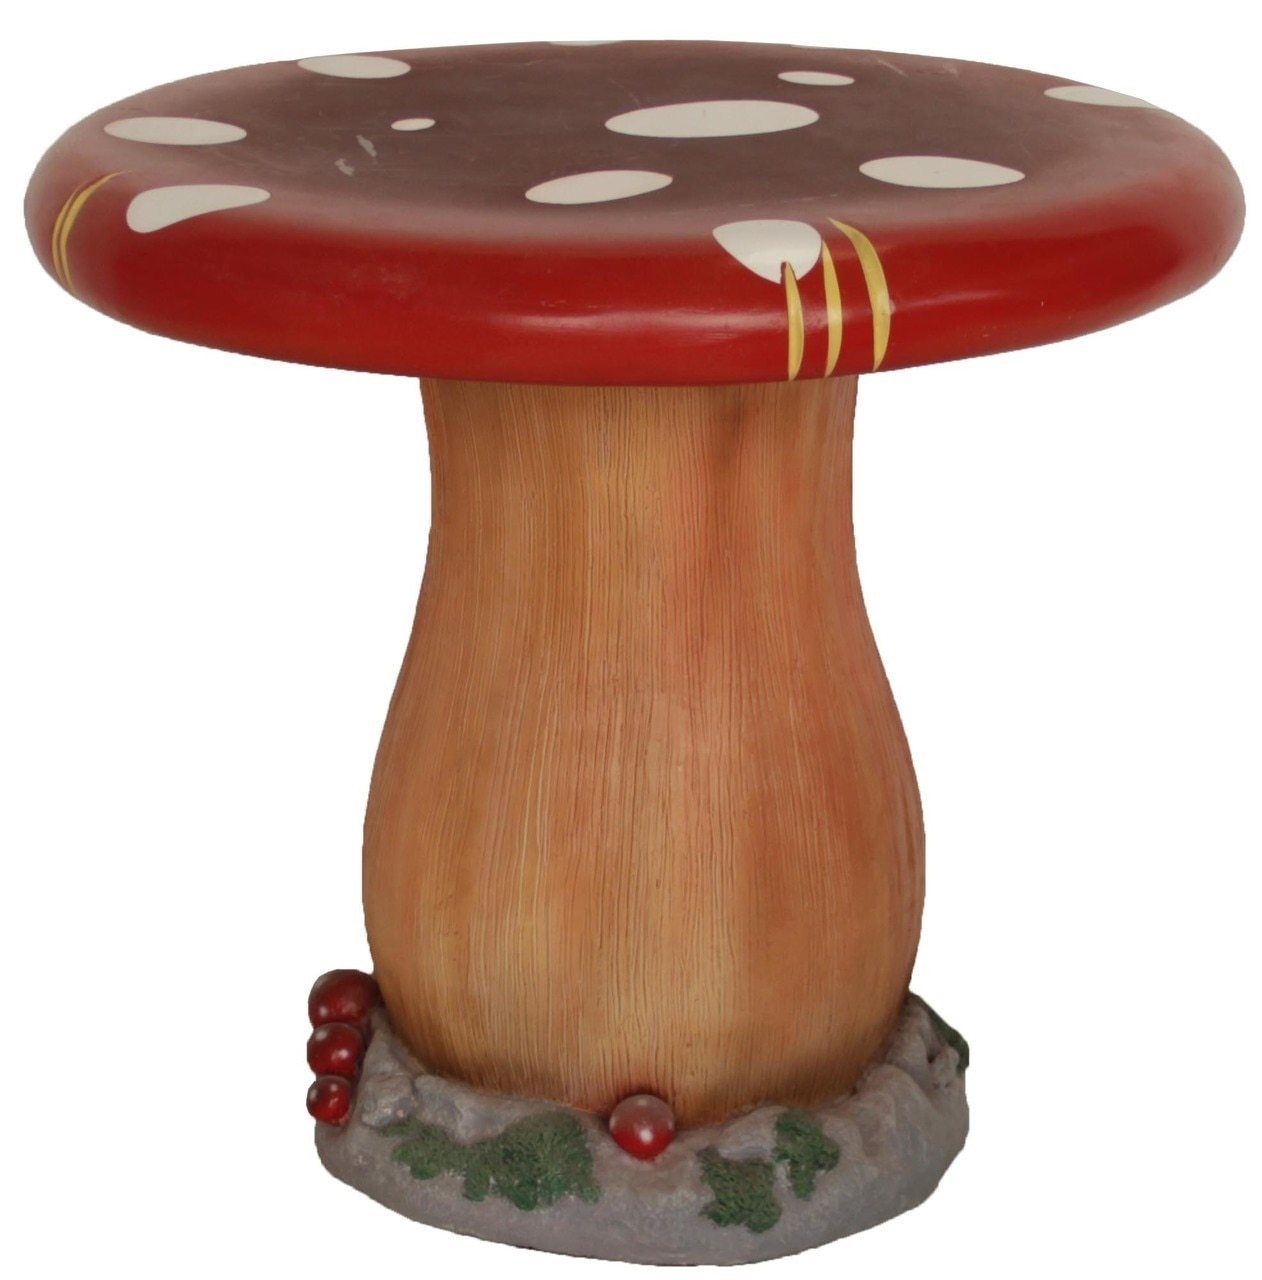 kids mushroom table